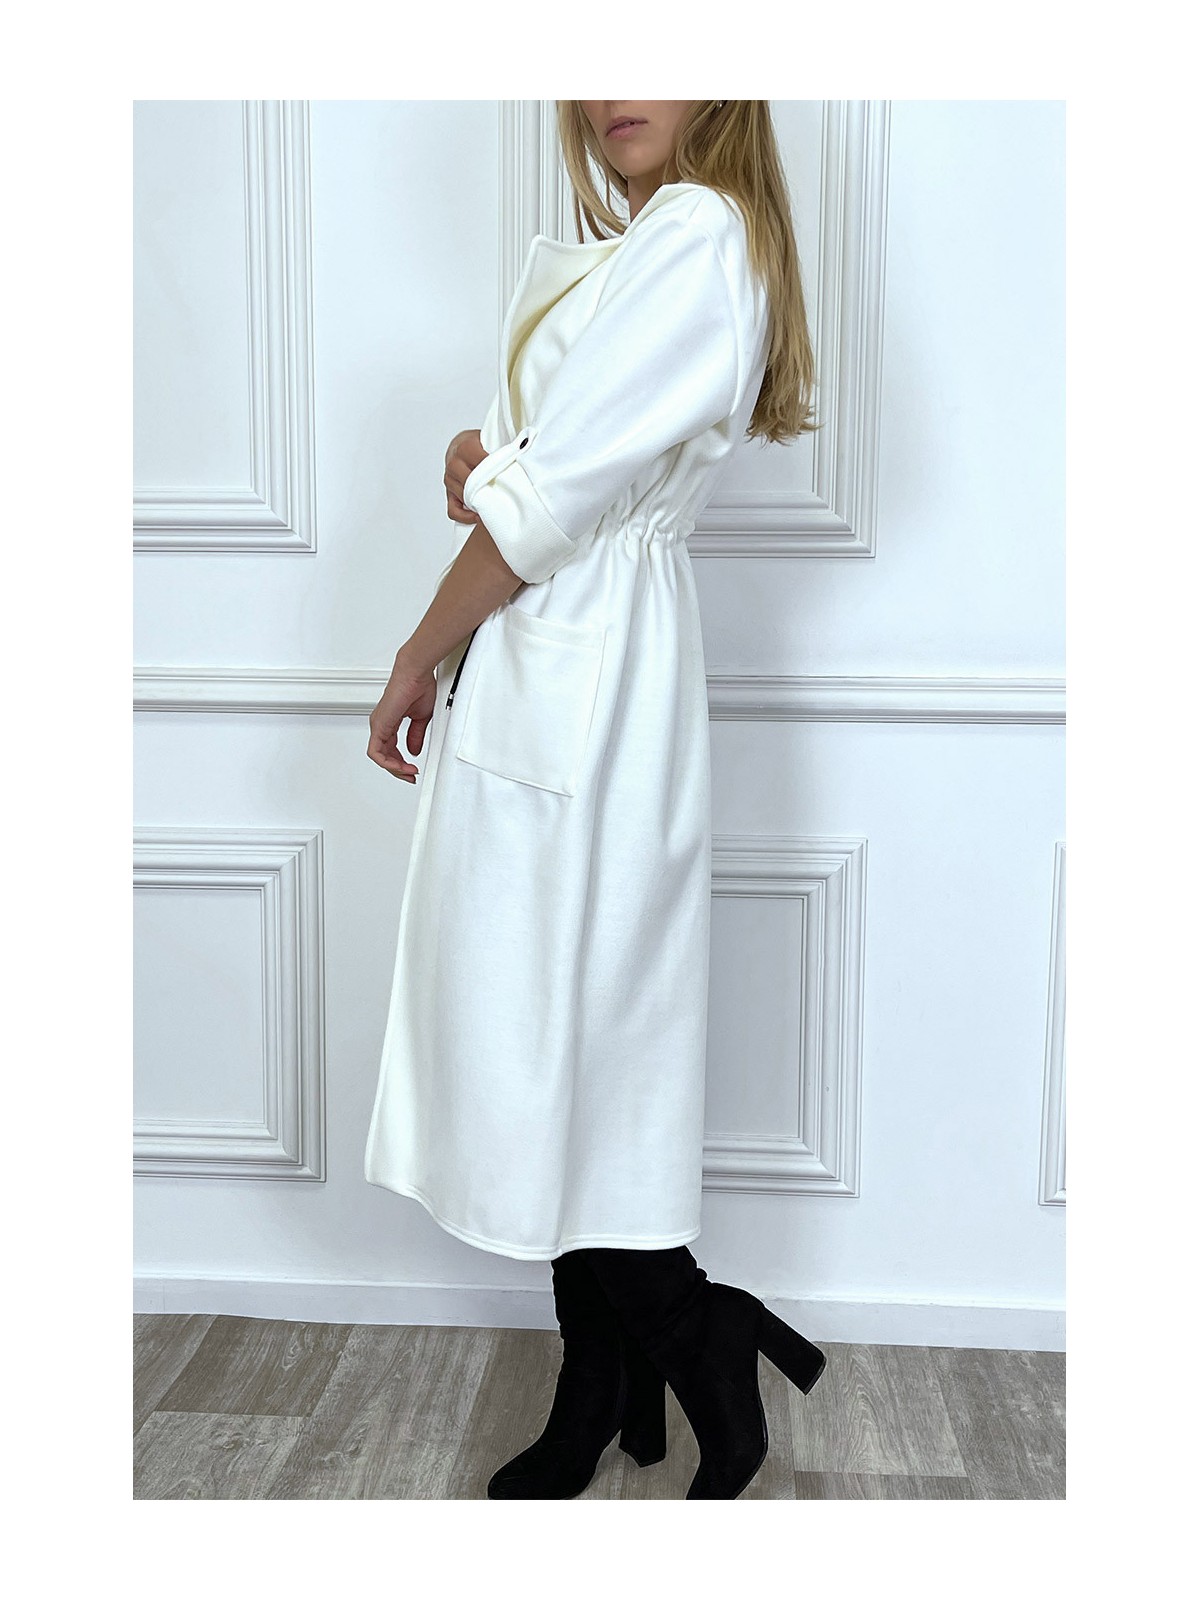 LoLL manteau blanc cintré à la taille avec poches - 3